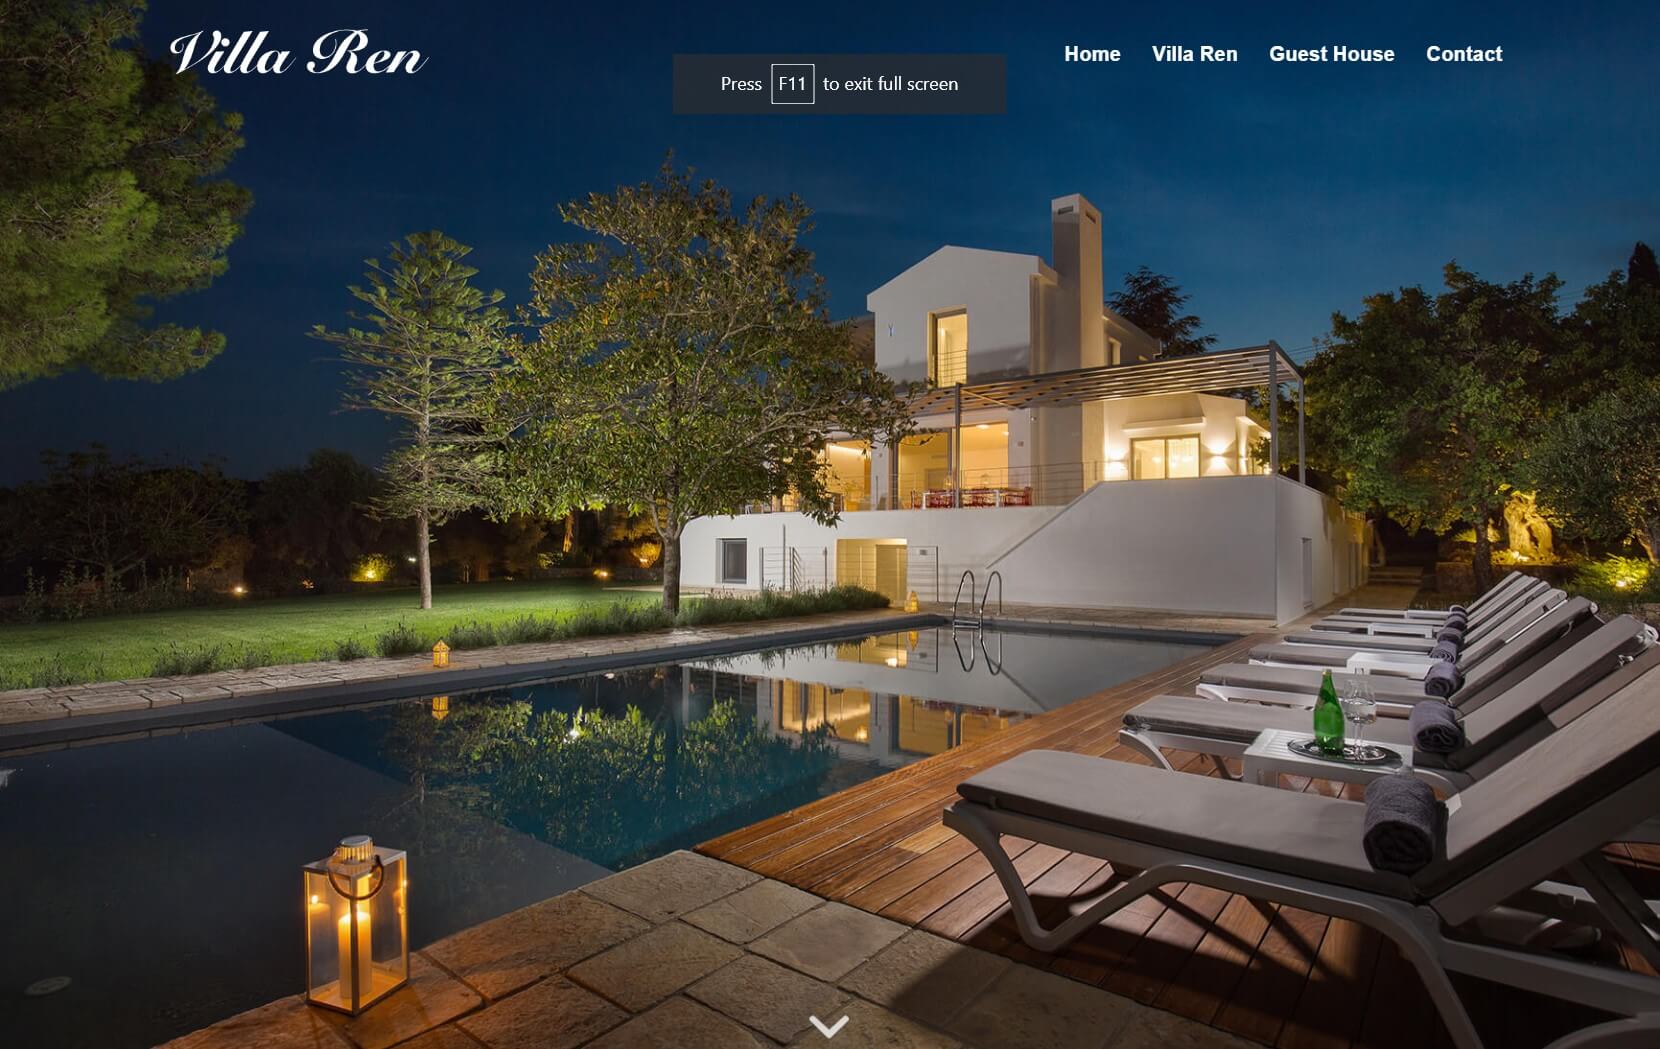 Κατασκευή Ιστοσελίδων Κέρκυρα - Villa Ren Dassia cover image ιστοσελίδα Κέρκυρα